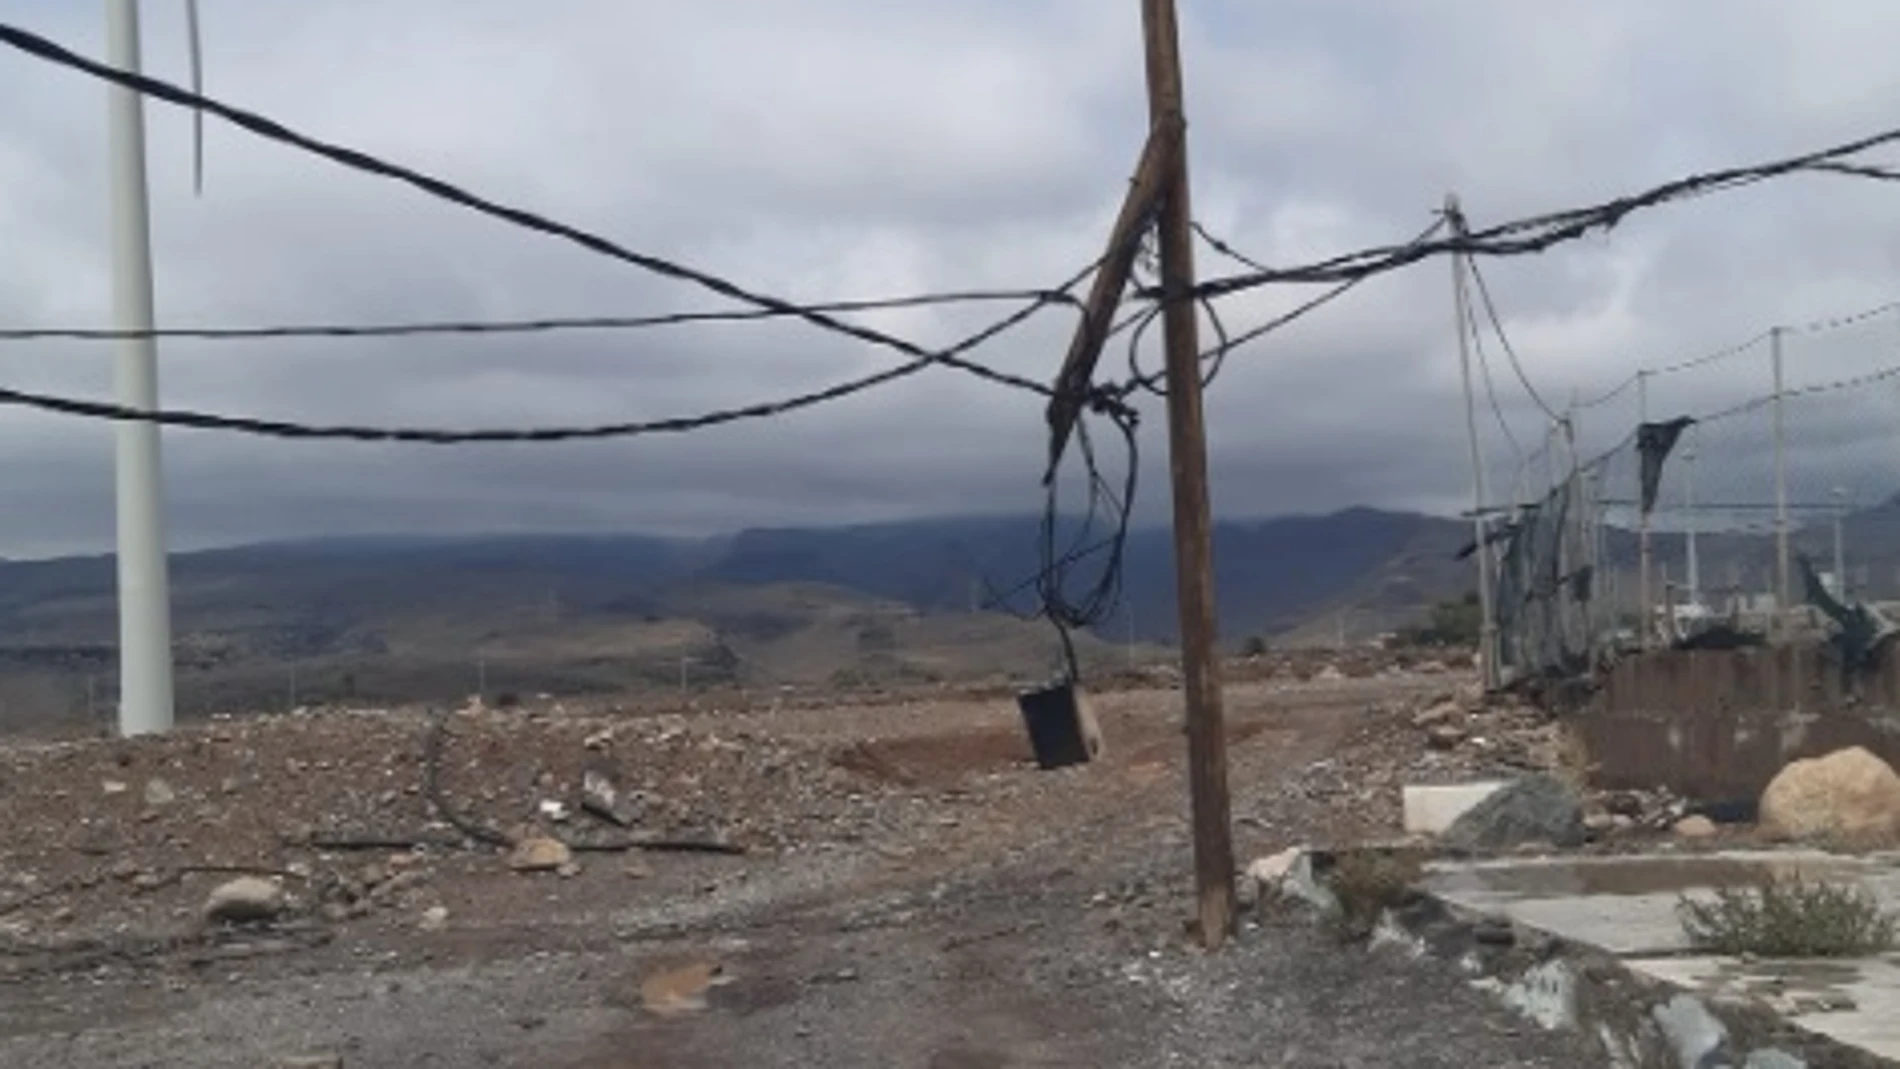 Daños provocados en el tendido eléctrico por el huracán tropical Hermine en Canarias